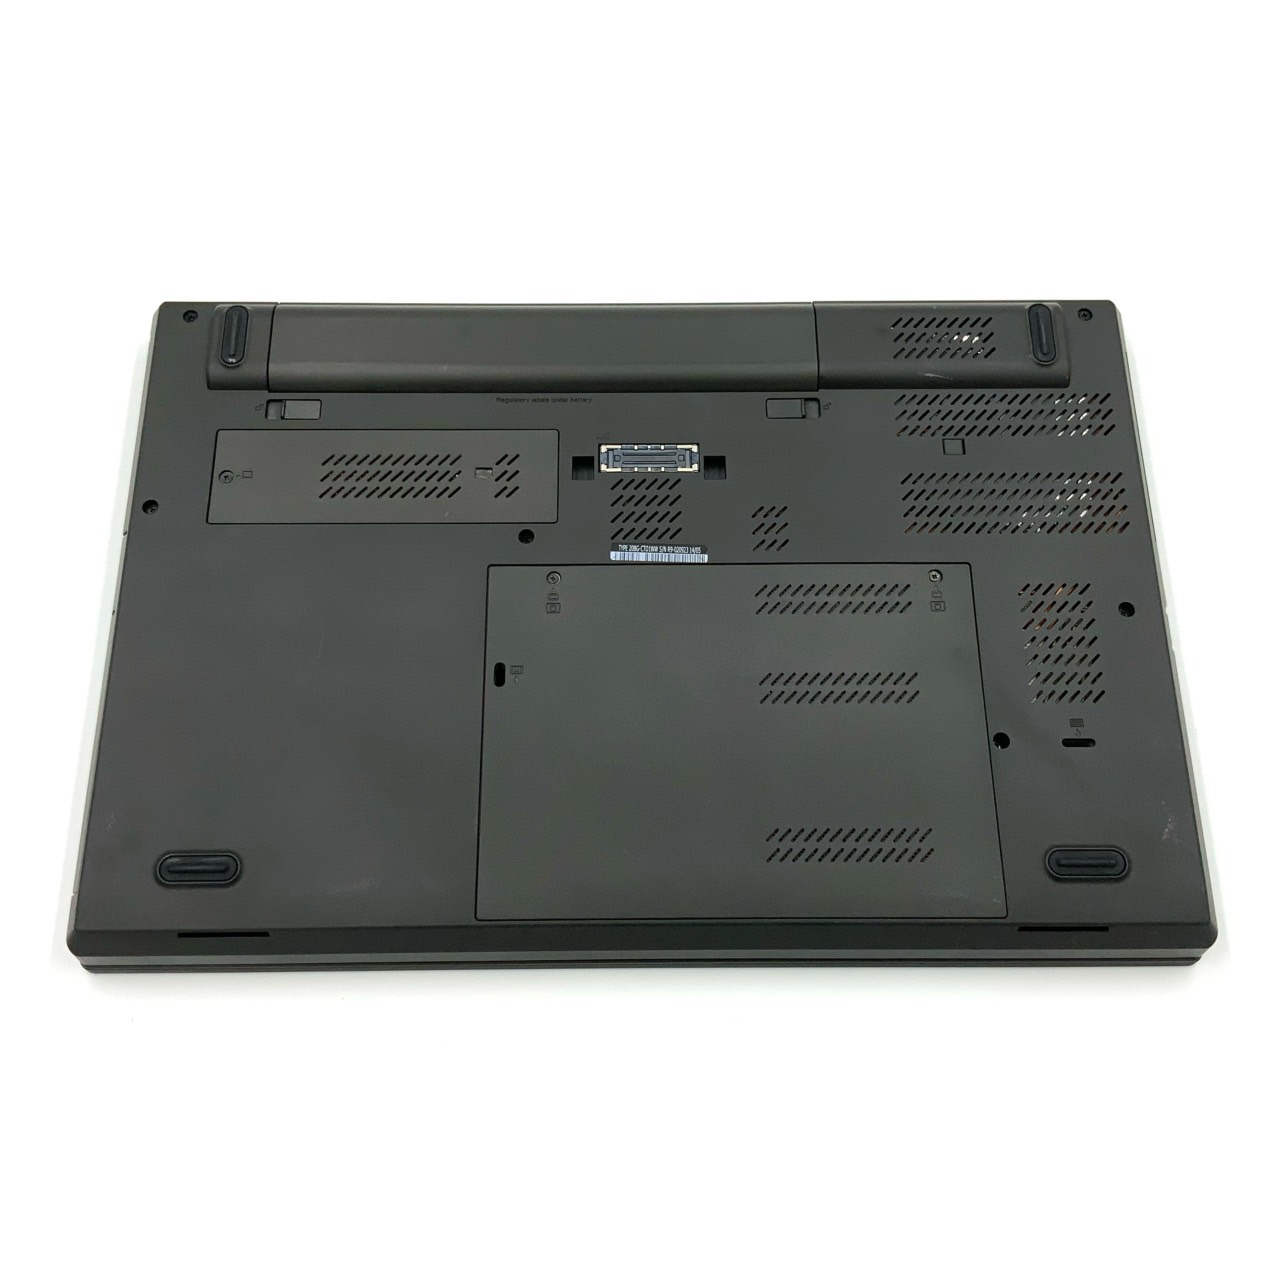 【楽天市場】【プロ向け】 【高スペック】 Lenovo ThinkPad W540 Mobile Workstation モバイル